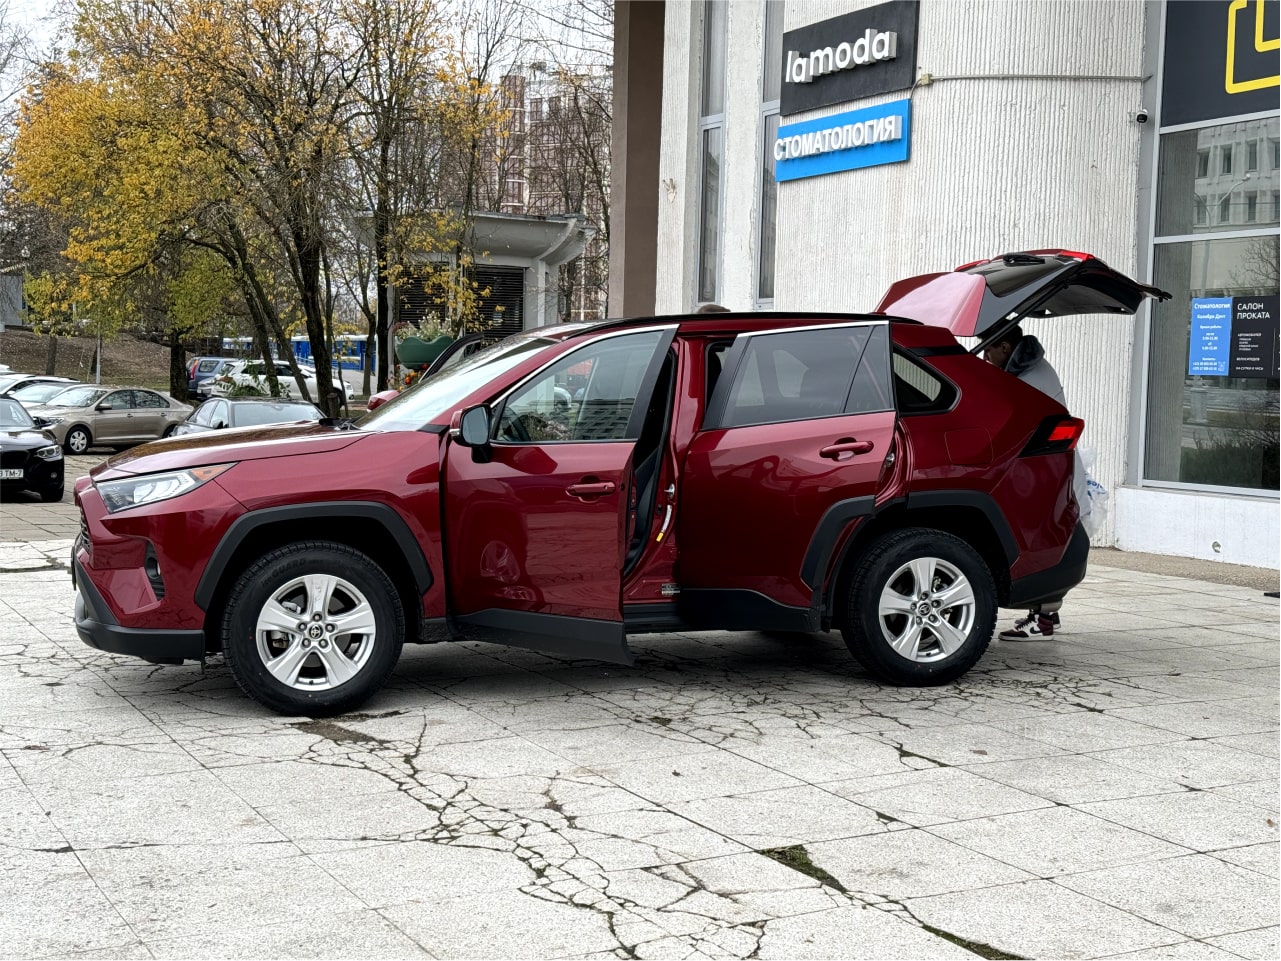 Аренда  Toyota RAV4 (FF)XLE Premium  6 класса 2021 года в городе Минск от 79 $/сутки,  двигатель: Бензин , объем 2.5 литров, КАСКО (Мультидрайв), без водителя, вид 4 - West Group